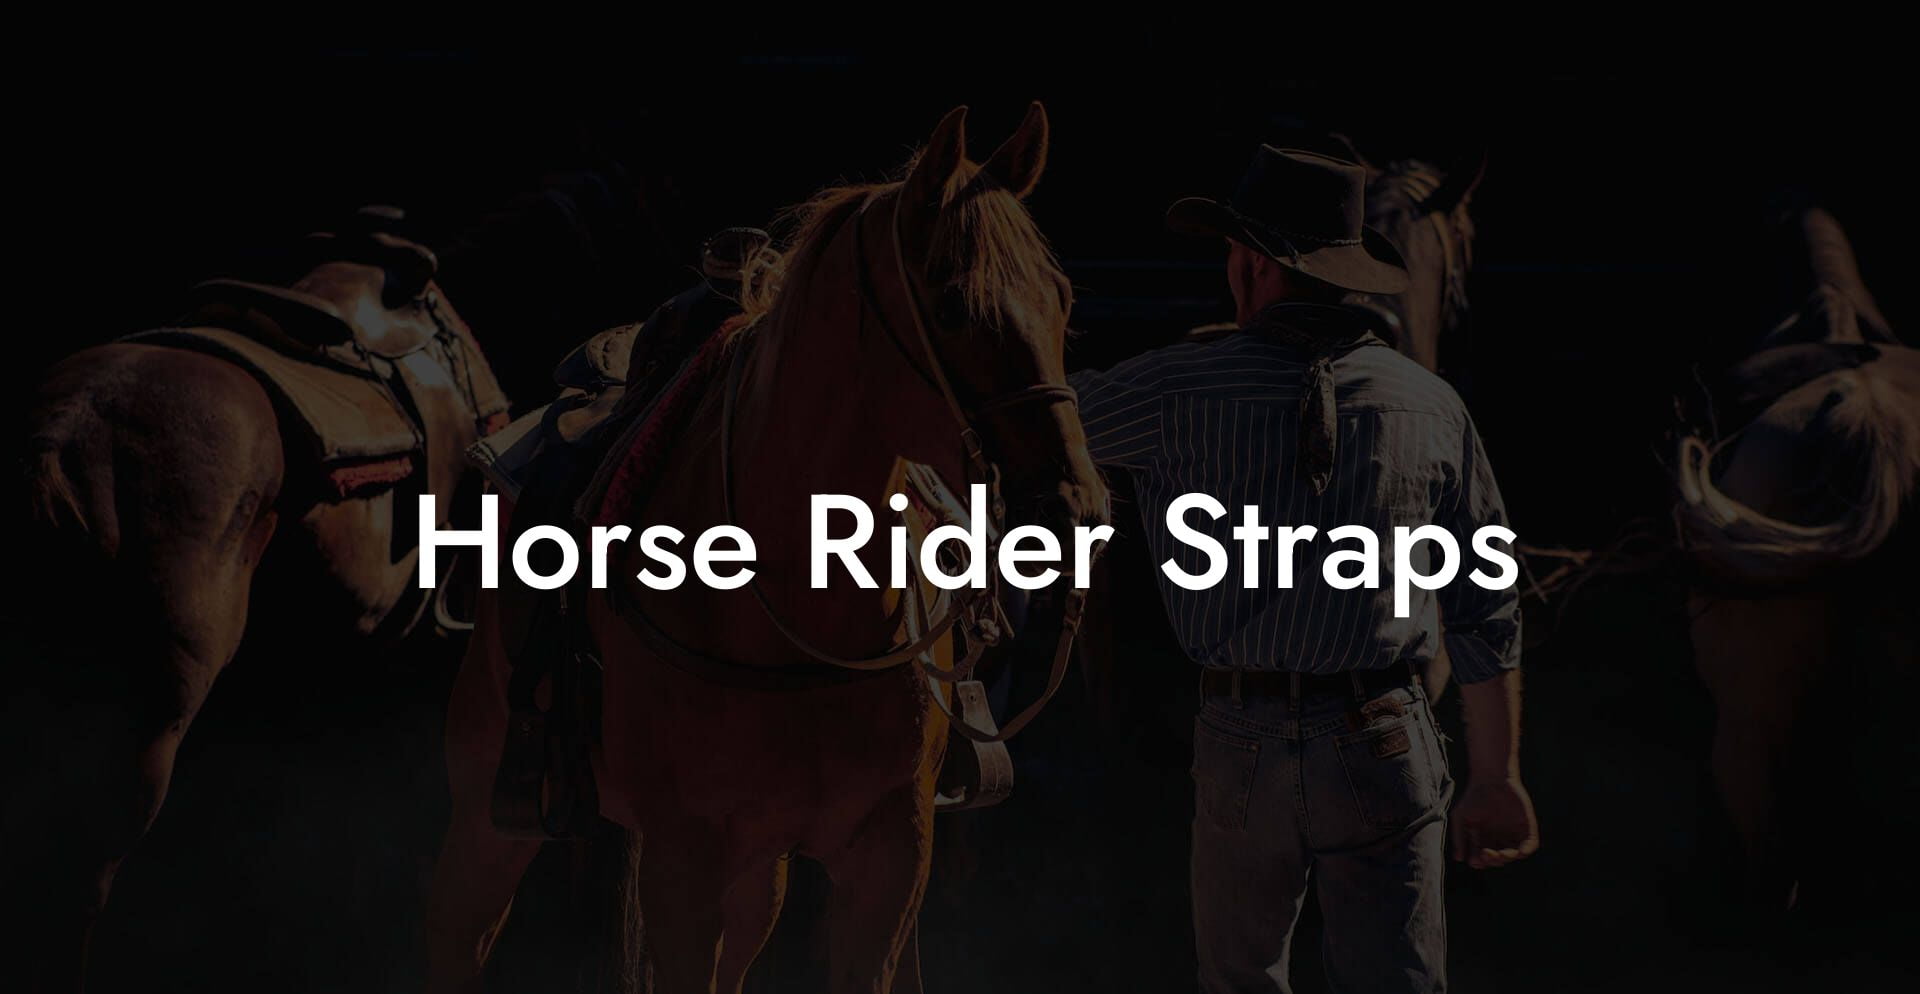 Horse Rider Straps